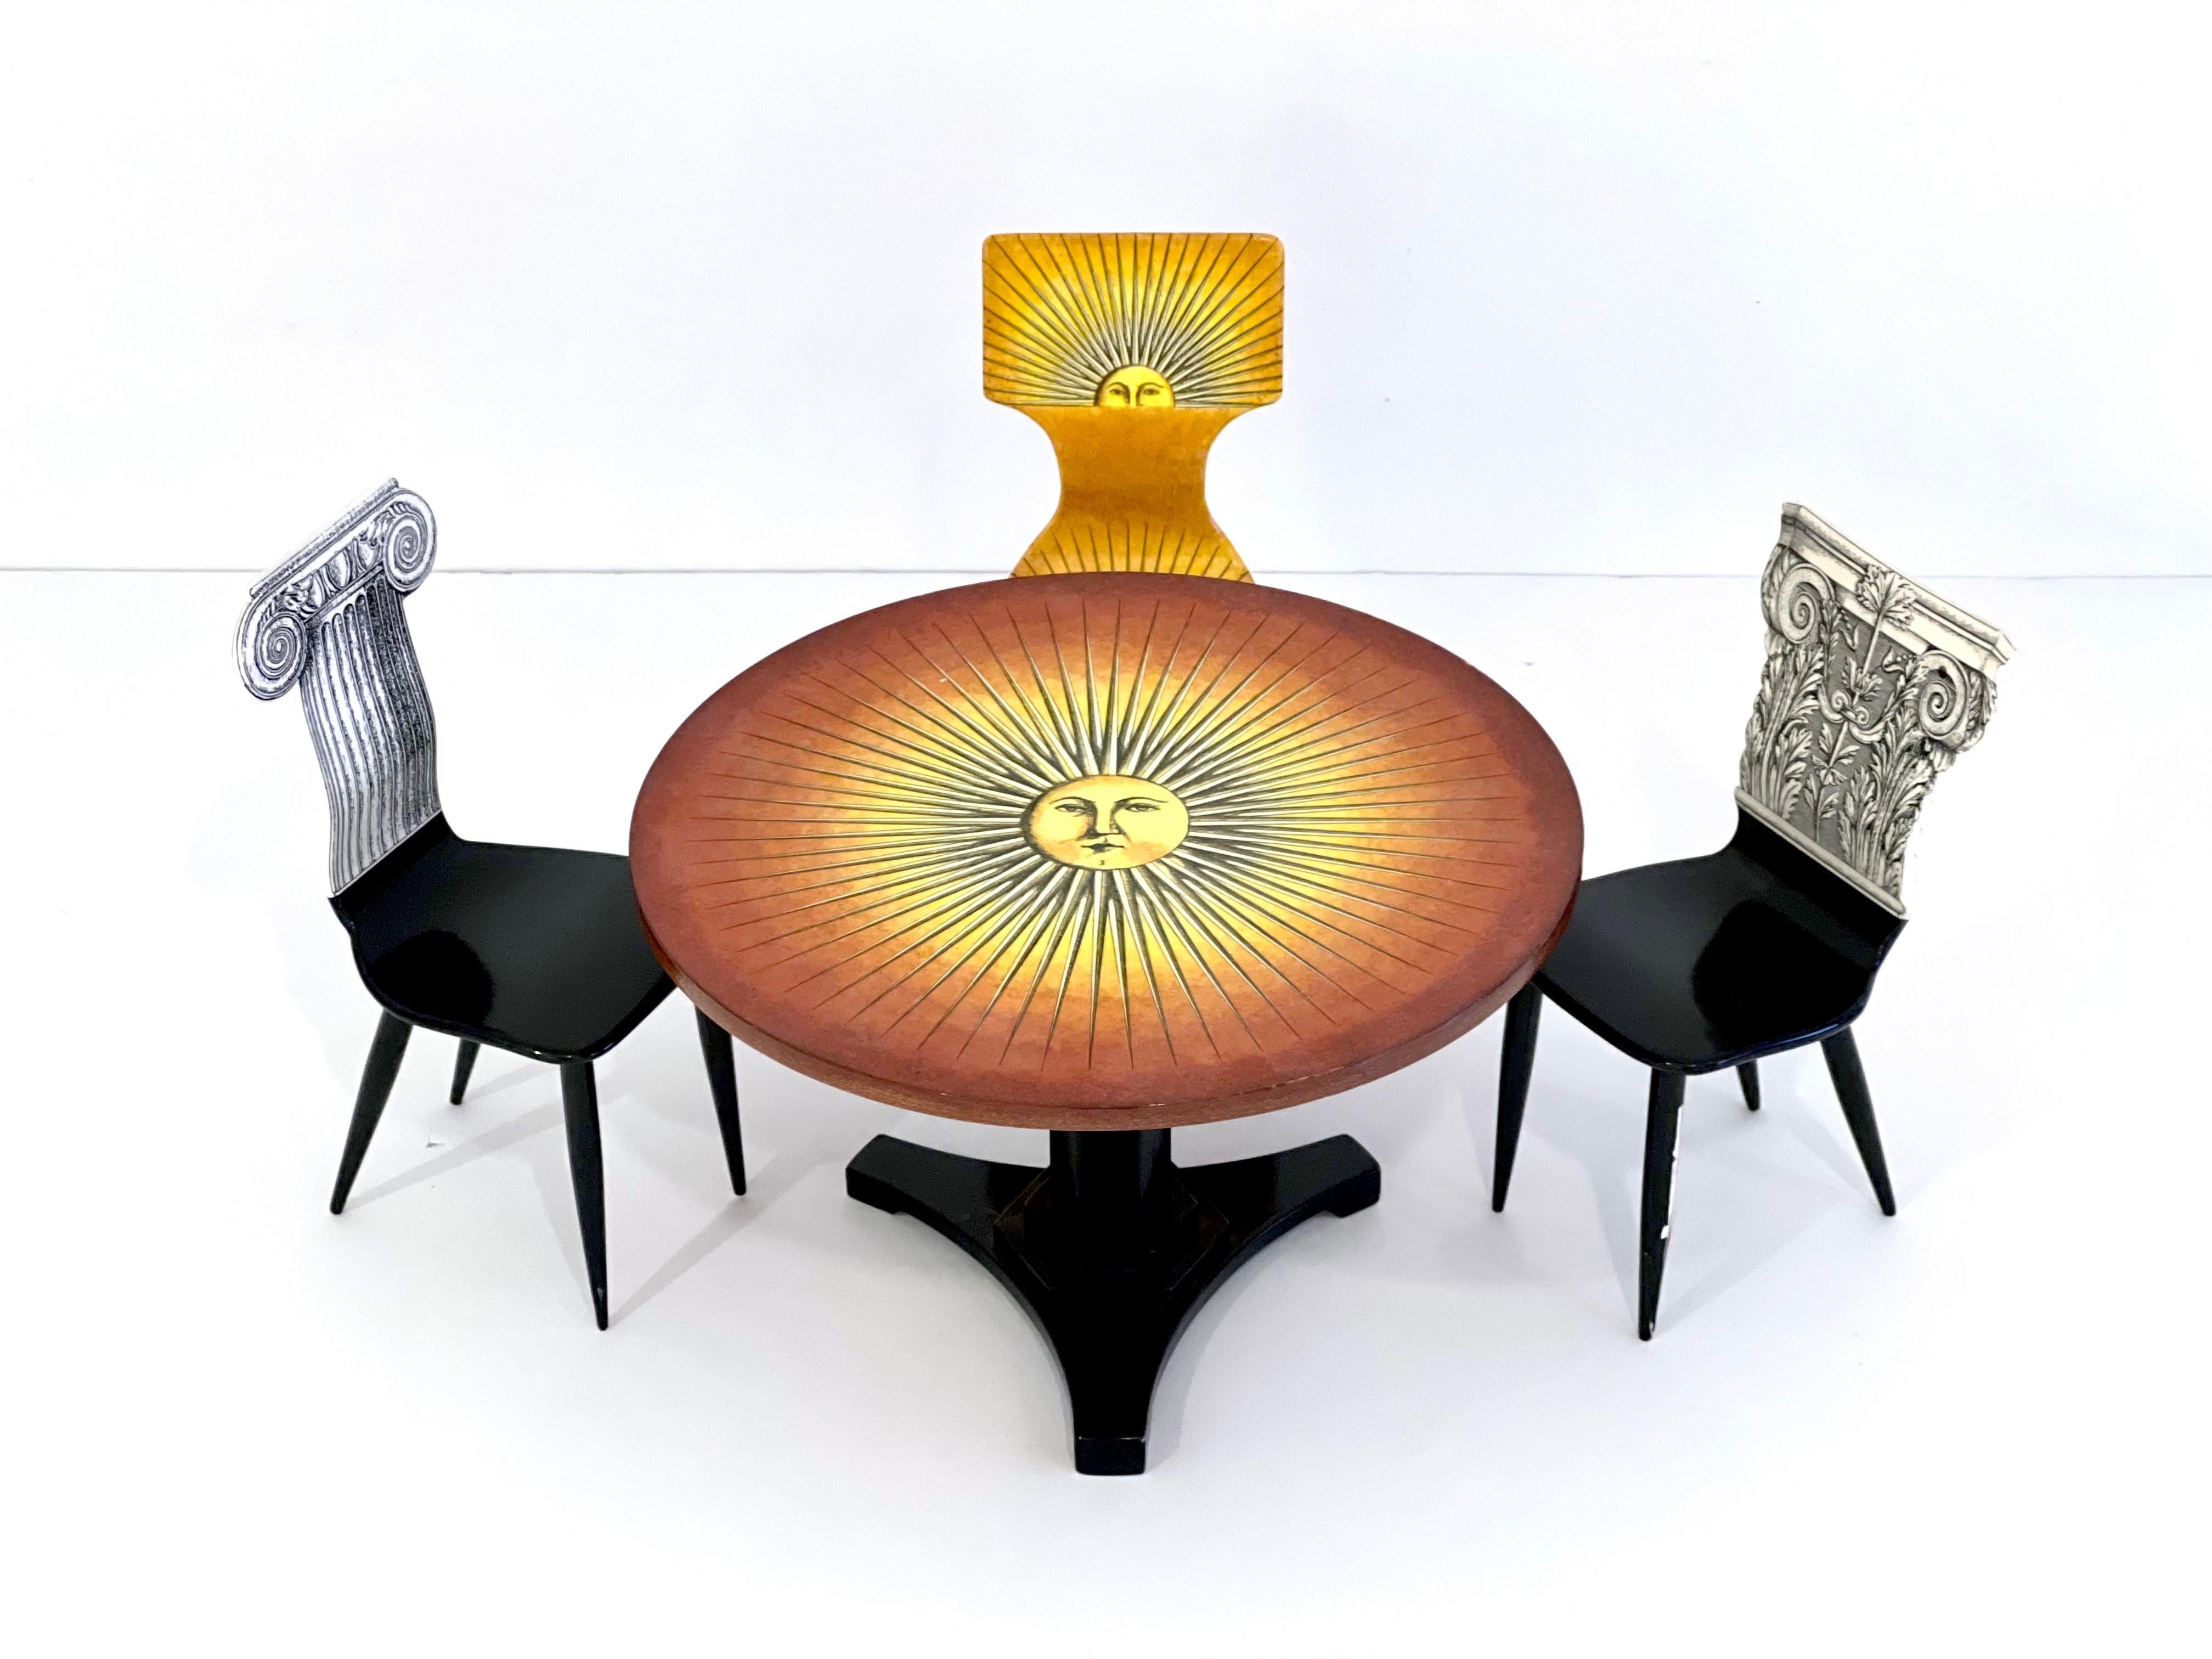 Seltener und spektakulärer Satz von Miniatur-Prototyp-Tisch und Stühlen von Piero Fornasetti, Italien um 1970. Die Stühle sind auf der Unterseite mit dem Stempel 